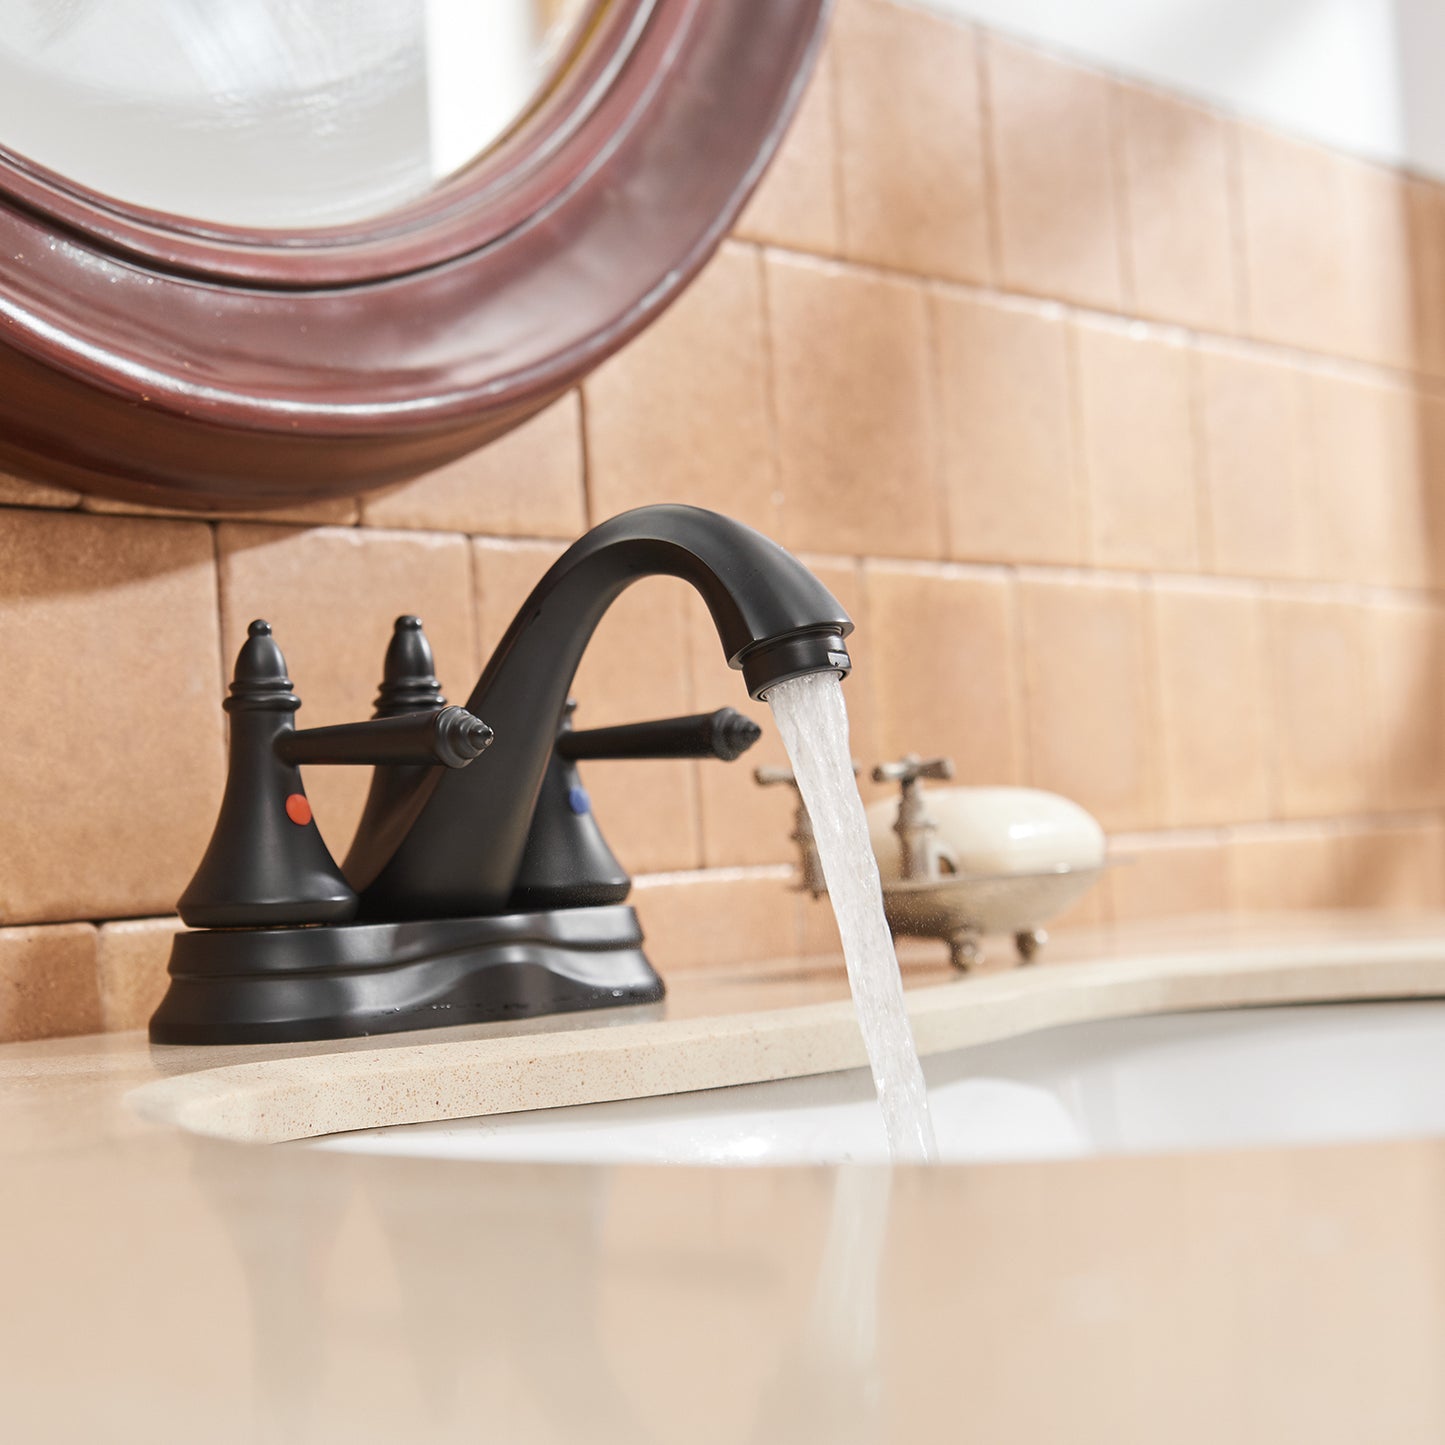 4 Inch Centerset Matte Black Double Handle Bathroom Faucet With Pop-Up Drain